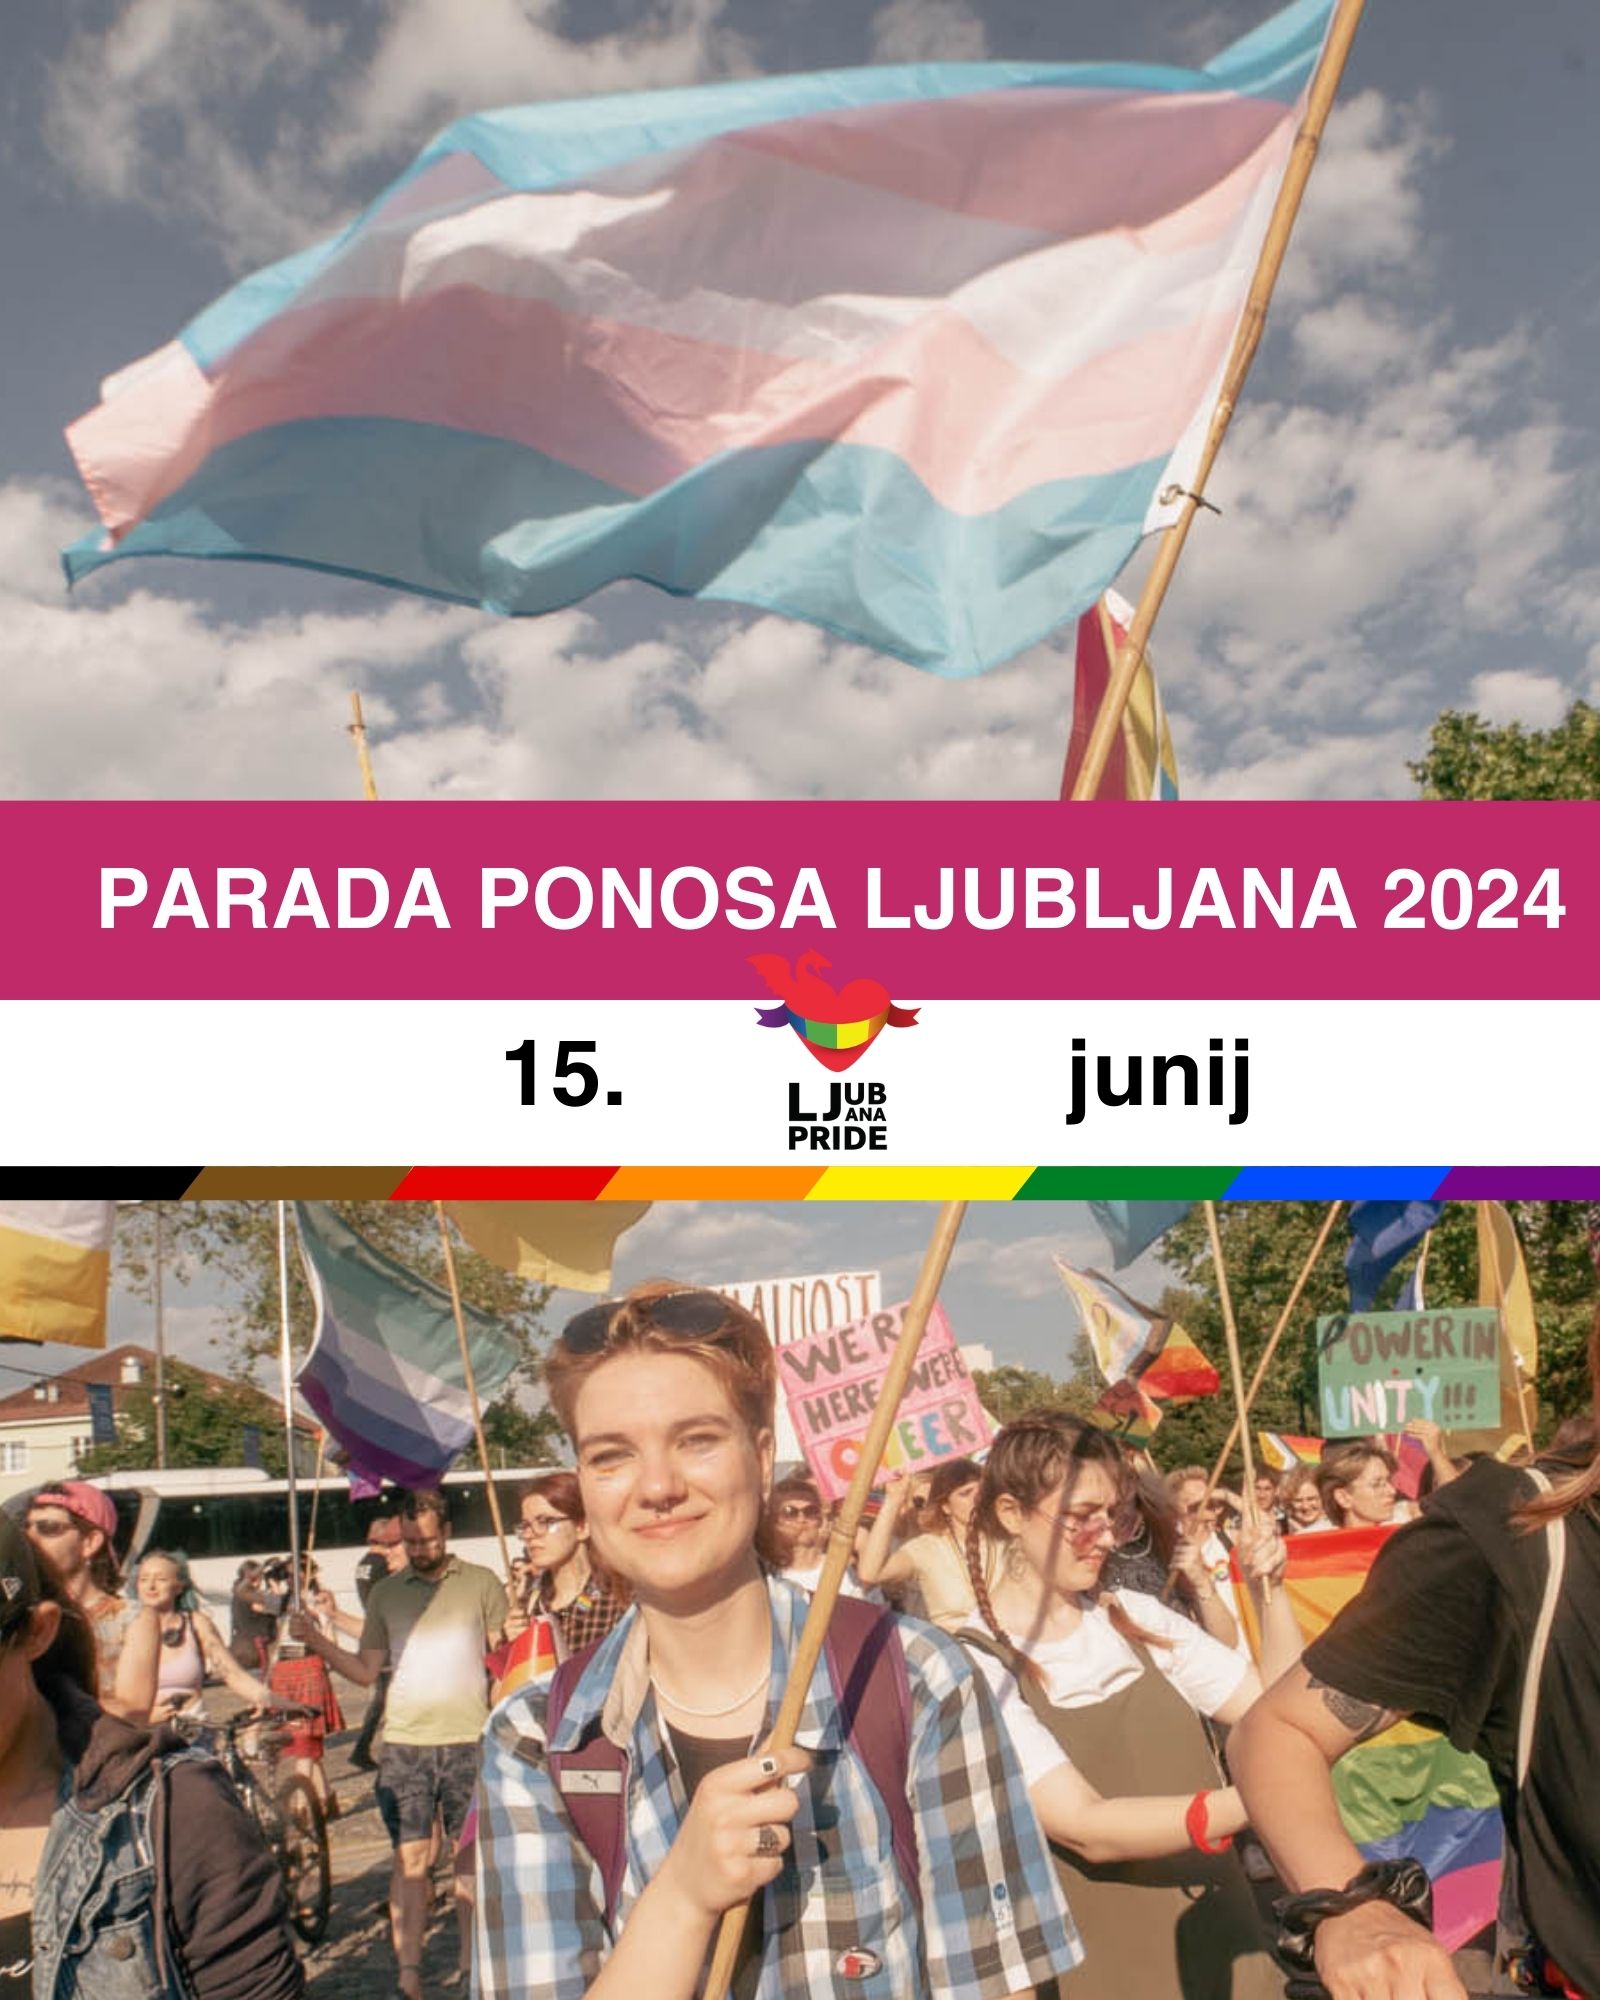 Ljubljana pride march 2024